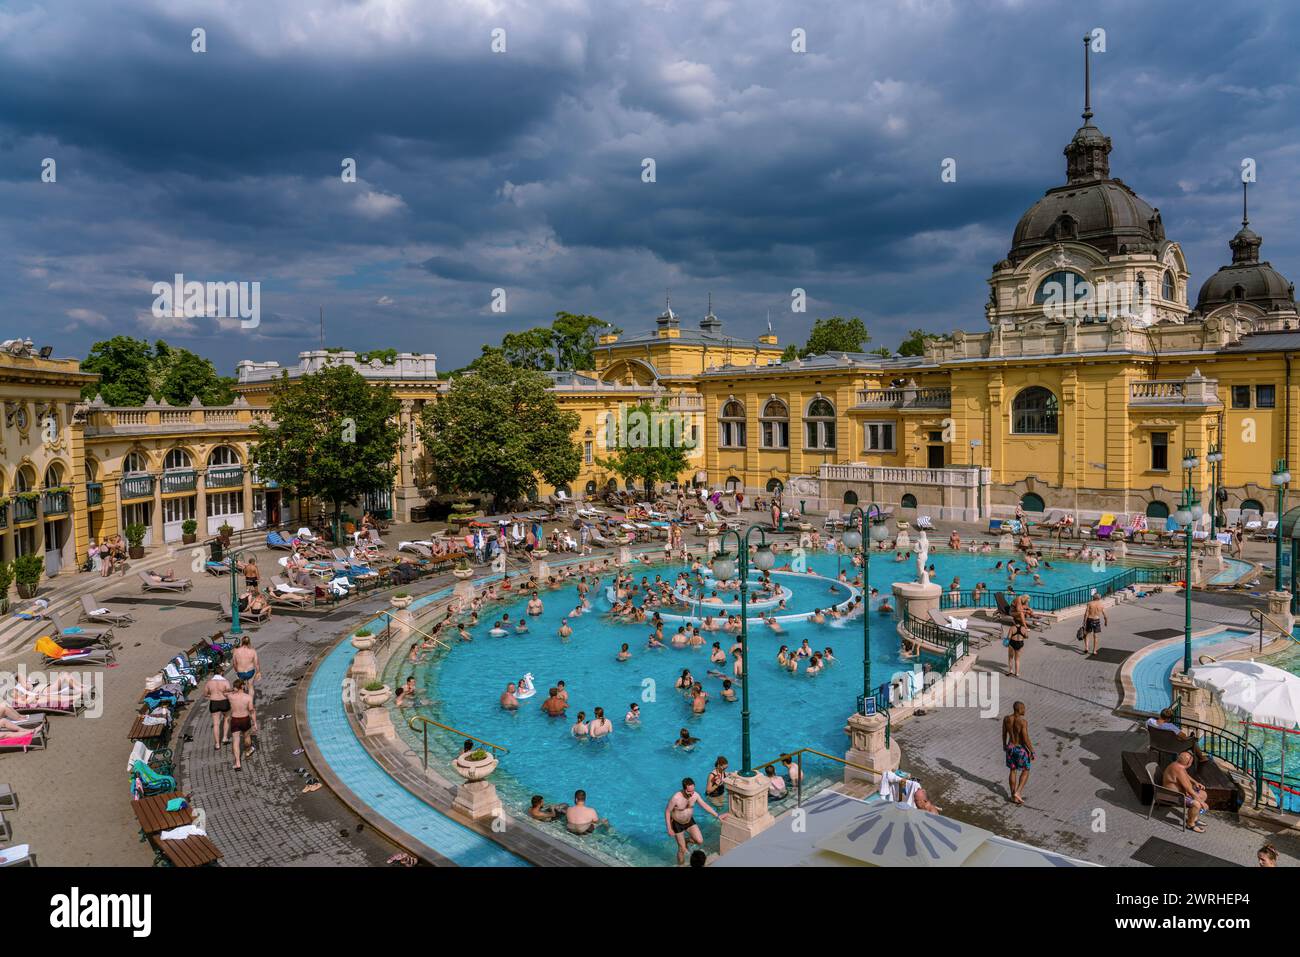 Voici une vue sur les thermes Szechenyi, un spa populaire et célèbre destination touristique le 07 juin 2022 à Budapest, Hongrie Banque D'Images